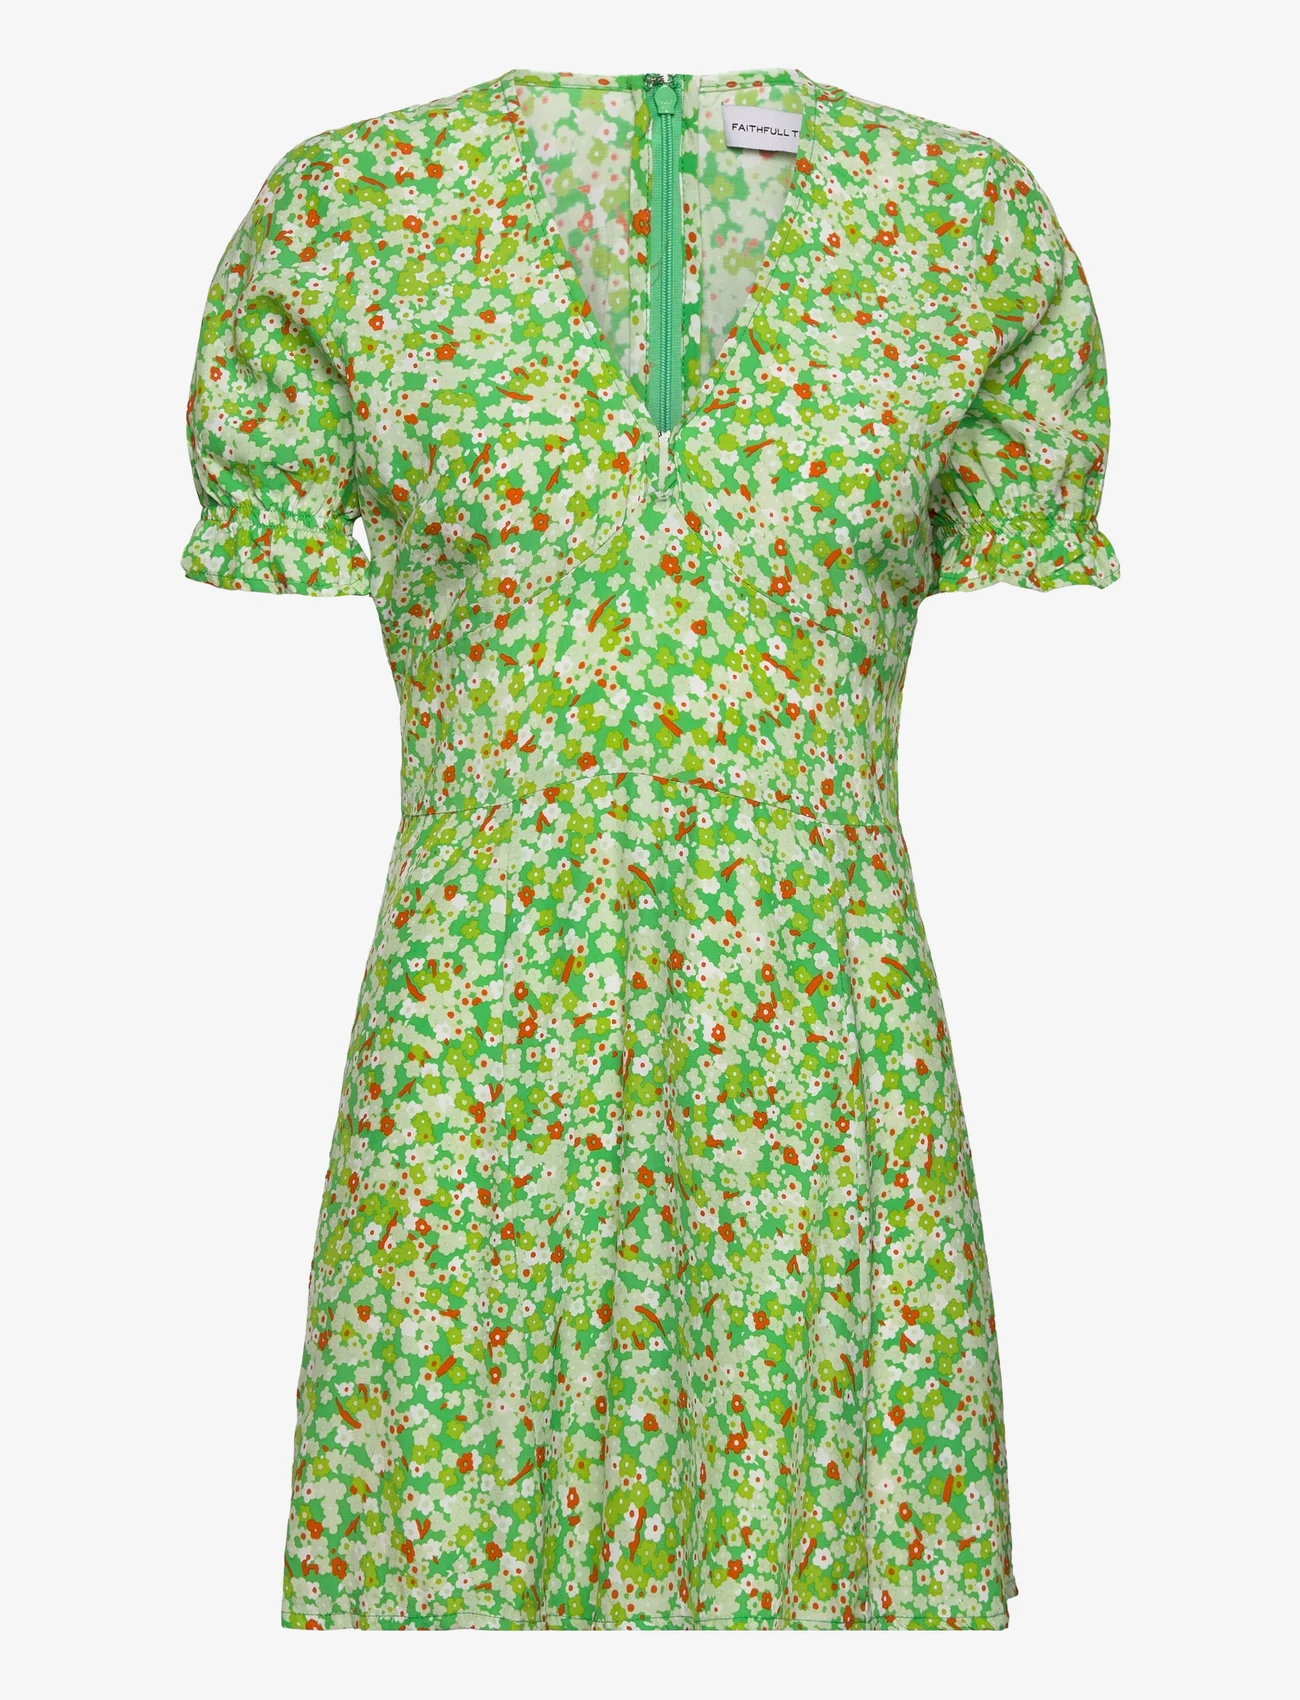 Faithfull The Brand - LA BELLE MINI DRESS - sommerkleider - lou floral print - green - 0